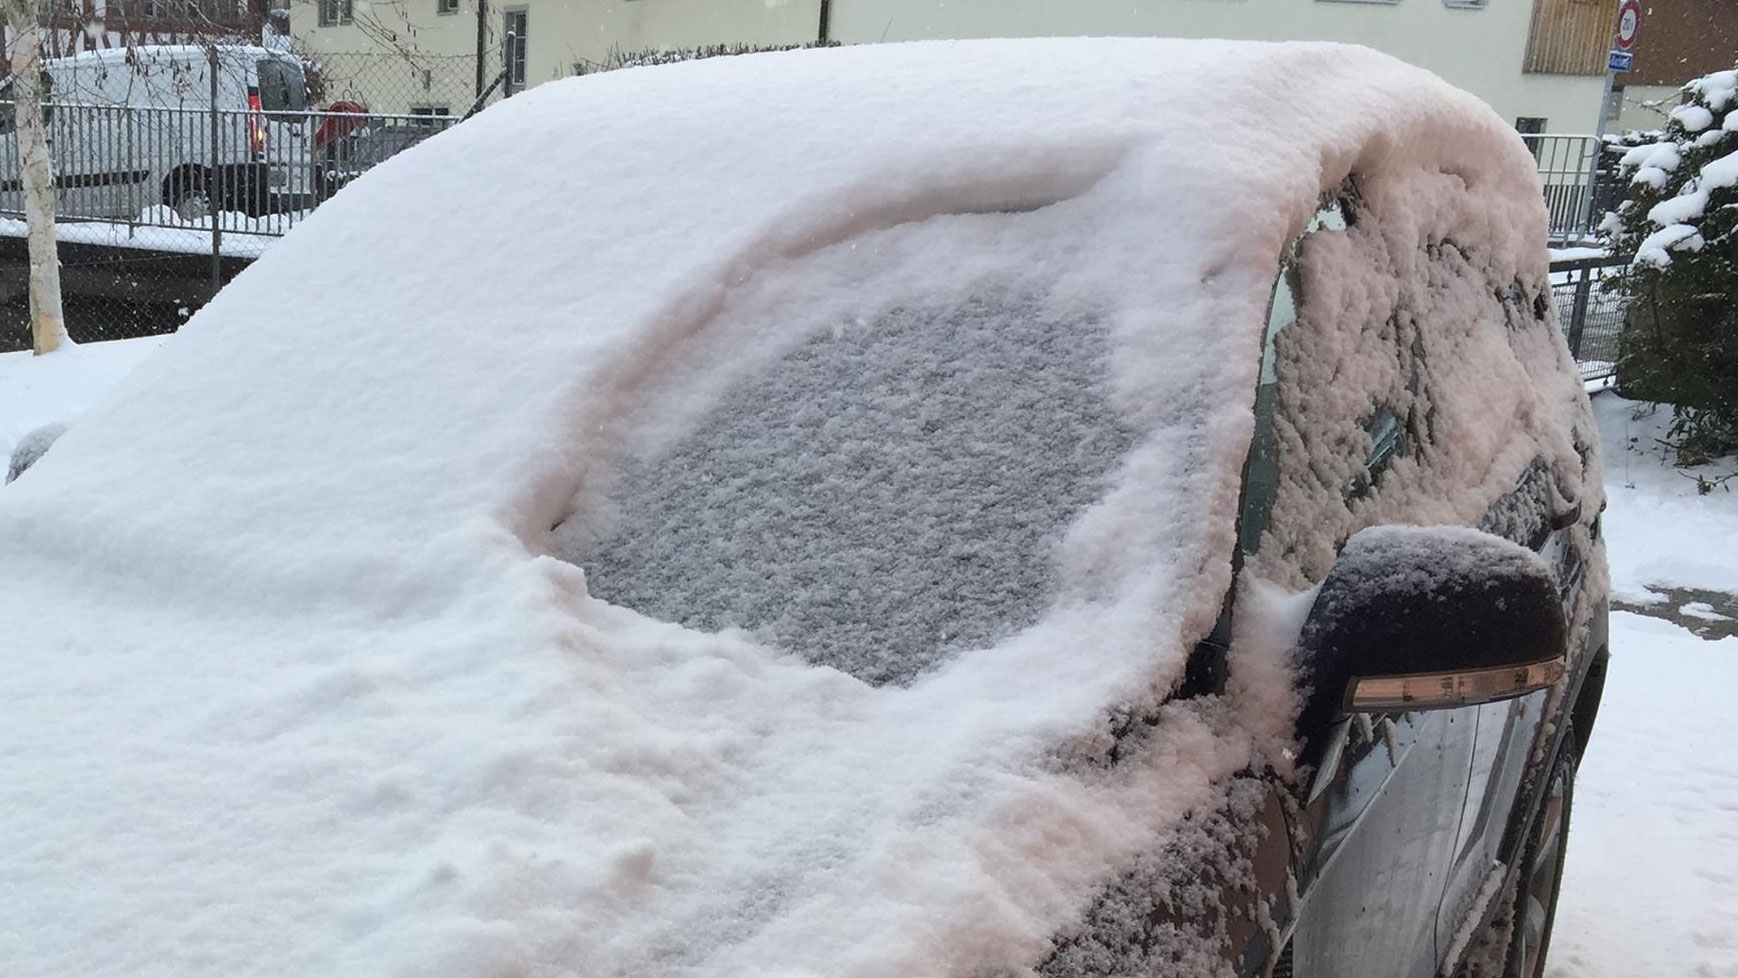 Auto auch bei Eis und Schnee regelmäßig waschen